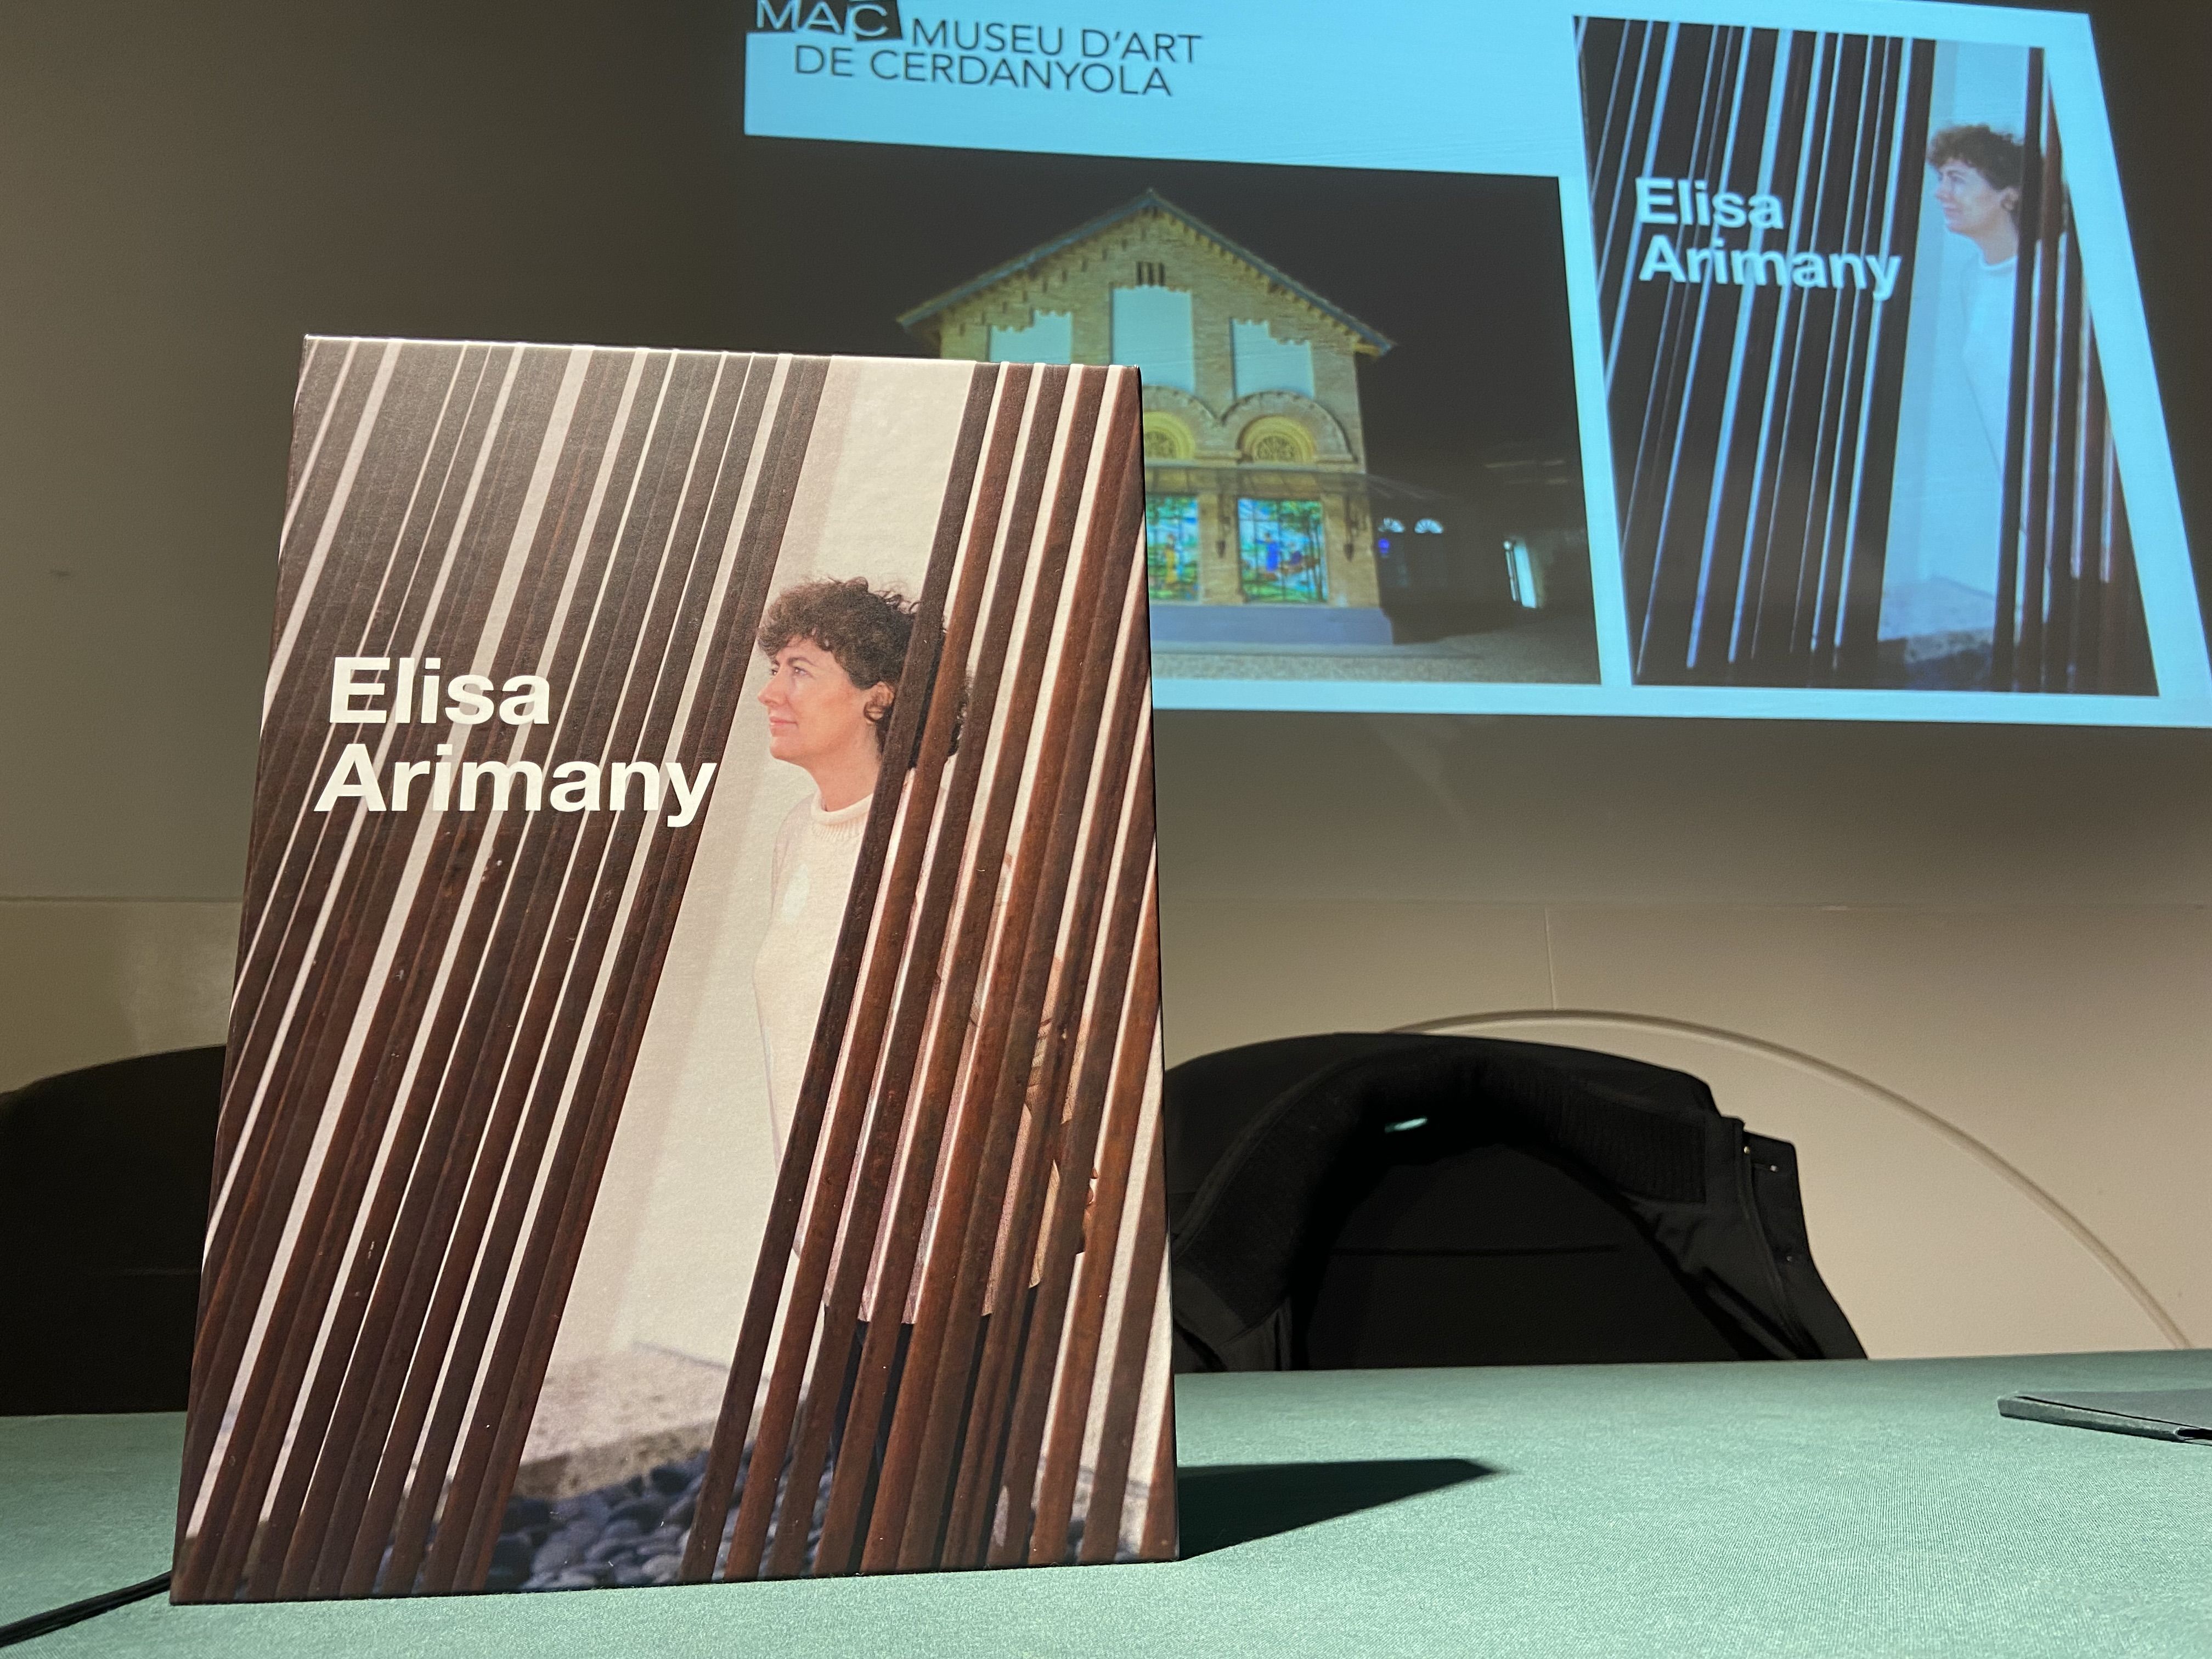 El llibre de l'obra d'Elisa Arimany presentat al MAC. FOTO: Nora Muñoz Otero